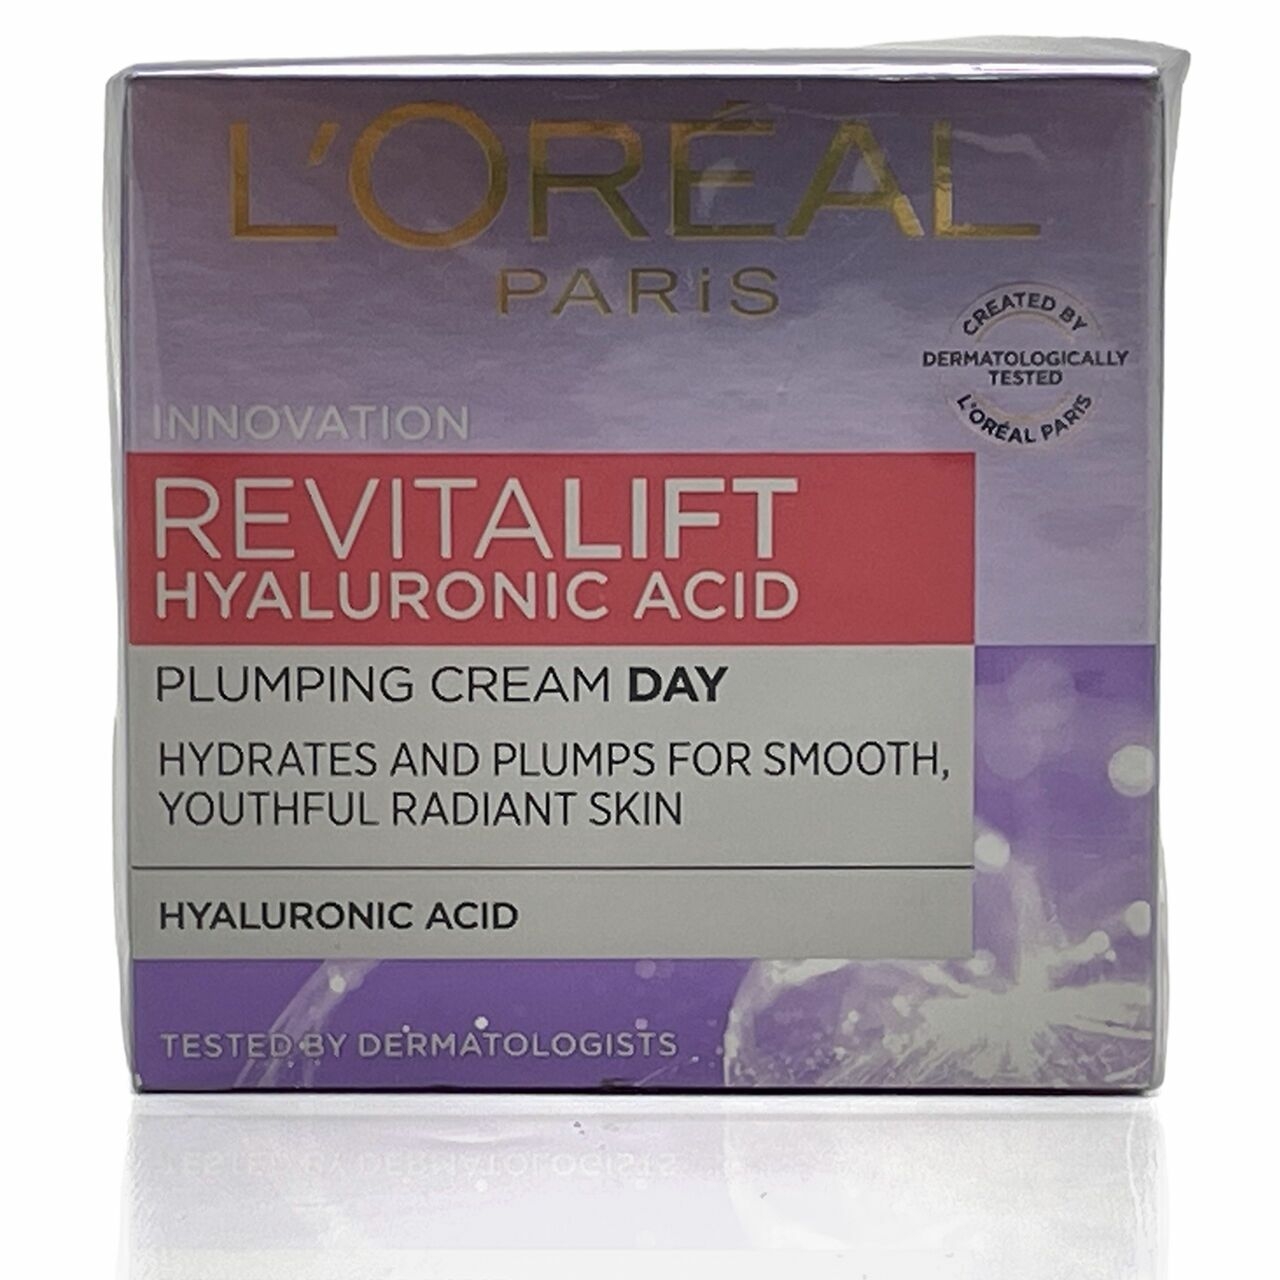 L'Oreal Innovation Revitalift Hyaluronic Acid Plumping Cream Day